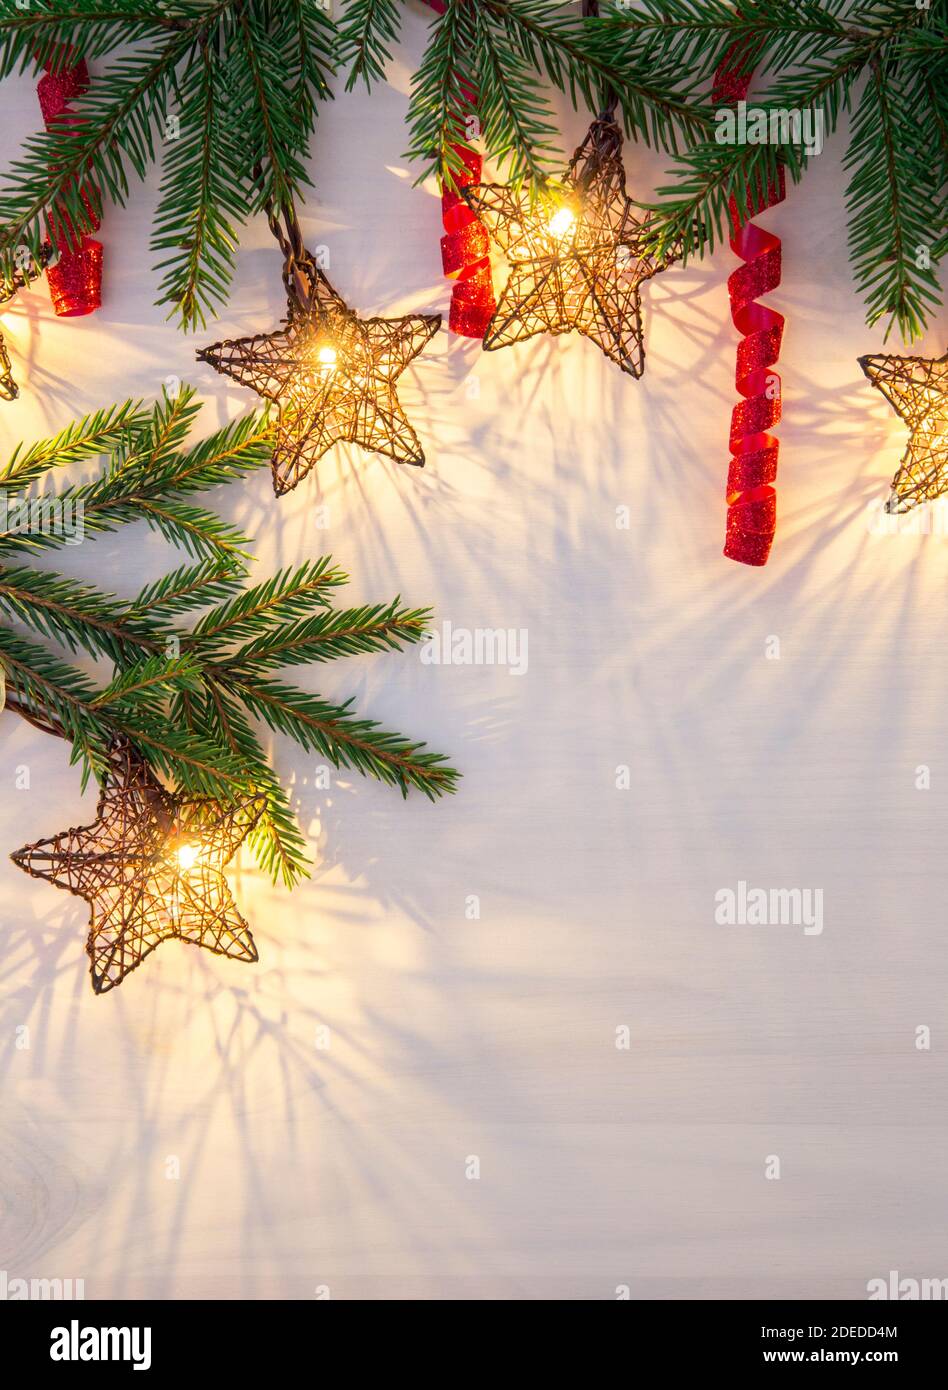 Stern Form Weihnachten Party Lichter hängen aus dem oberen Abschnitt. Grüne Fichtenzweige zur Dekoration und rot gewellte glänzende Saiten. Platz für die Chargenkopie. Stockfoto